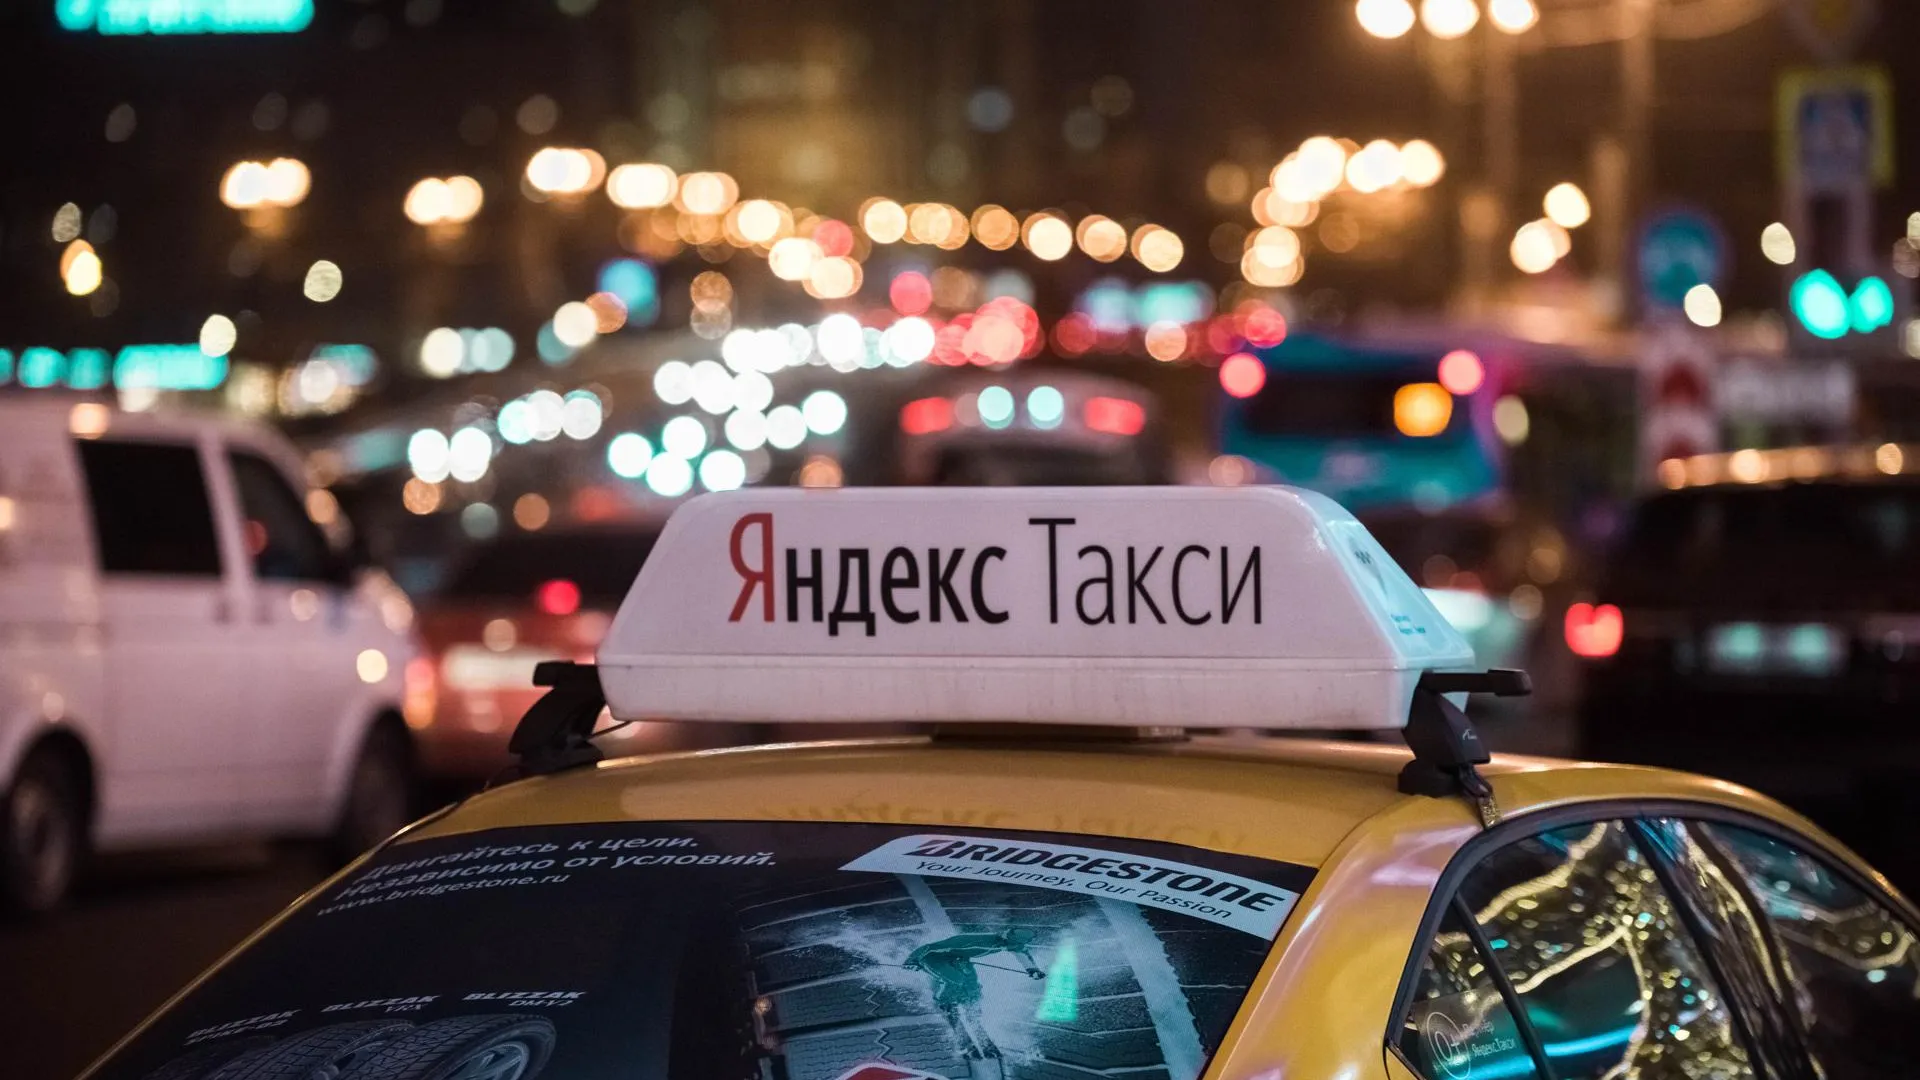 «Яндекс Такси» сделал бесплатными для пассажиров все поездки из района Crocus